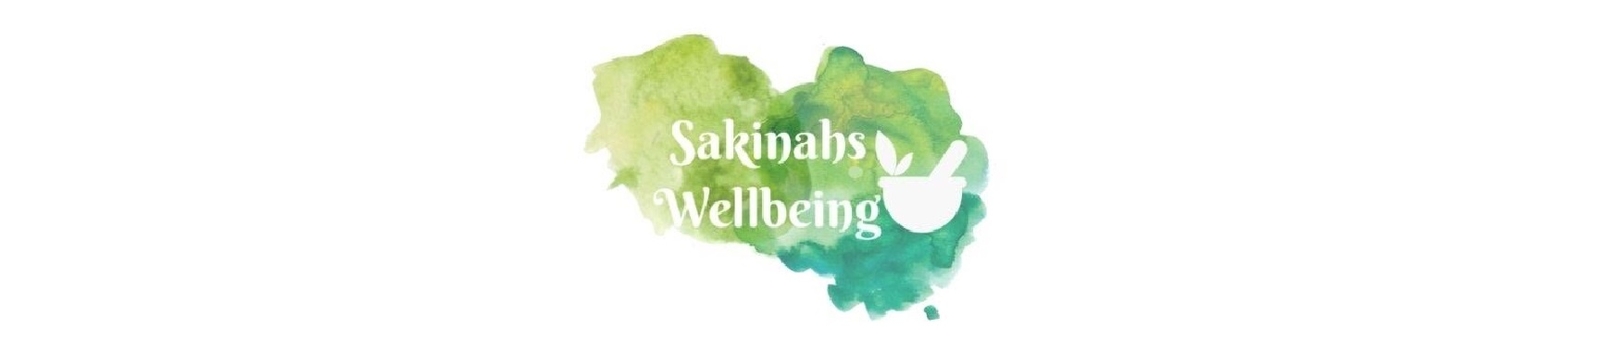 Sakinahs Wellbeing